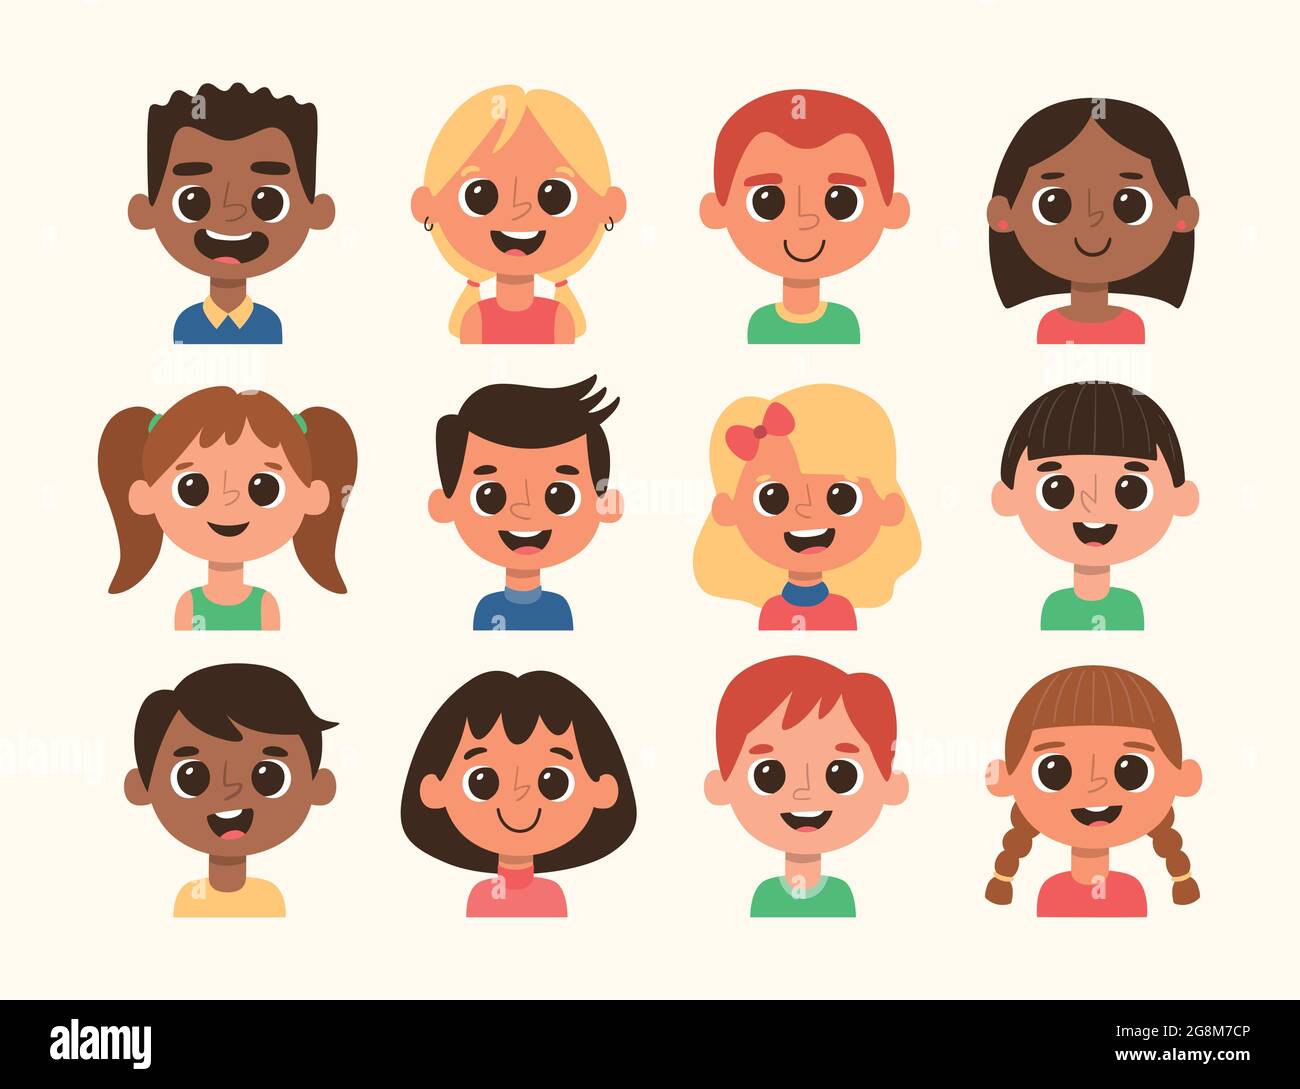 Cartoon Kinder Avatar Set. Unterschiedliche Frisur und Hautfarbe. Set 2 von 4. Stock Vektor